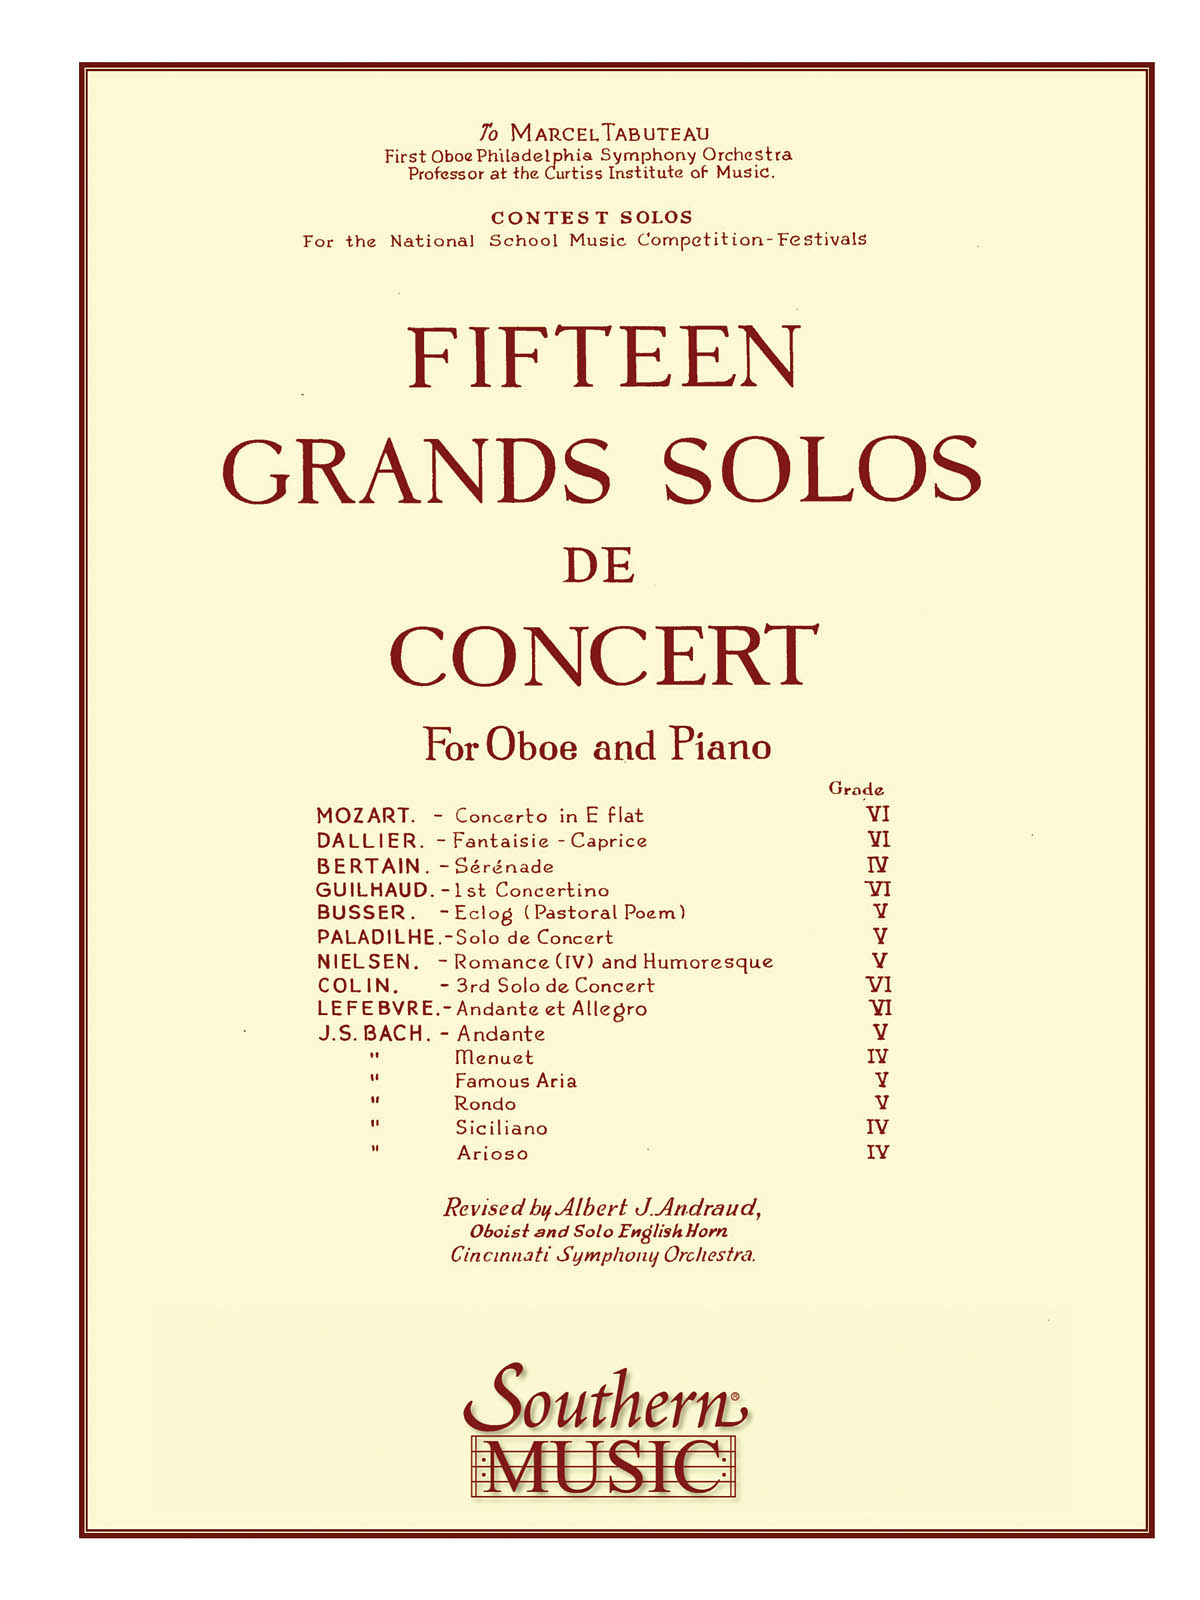 15 Grands Solos De Concert